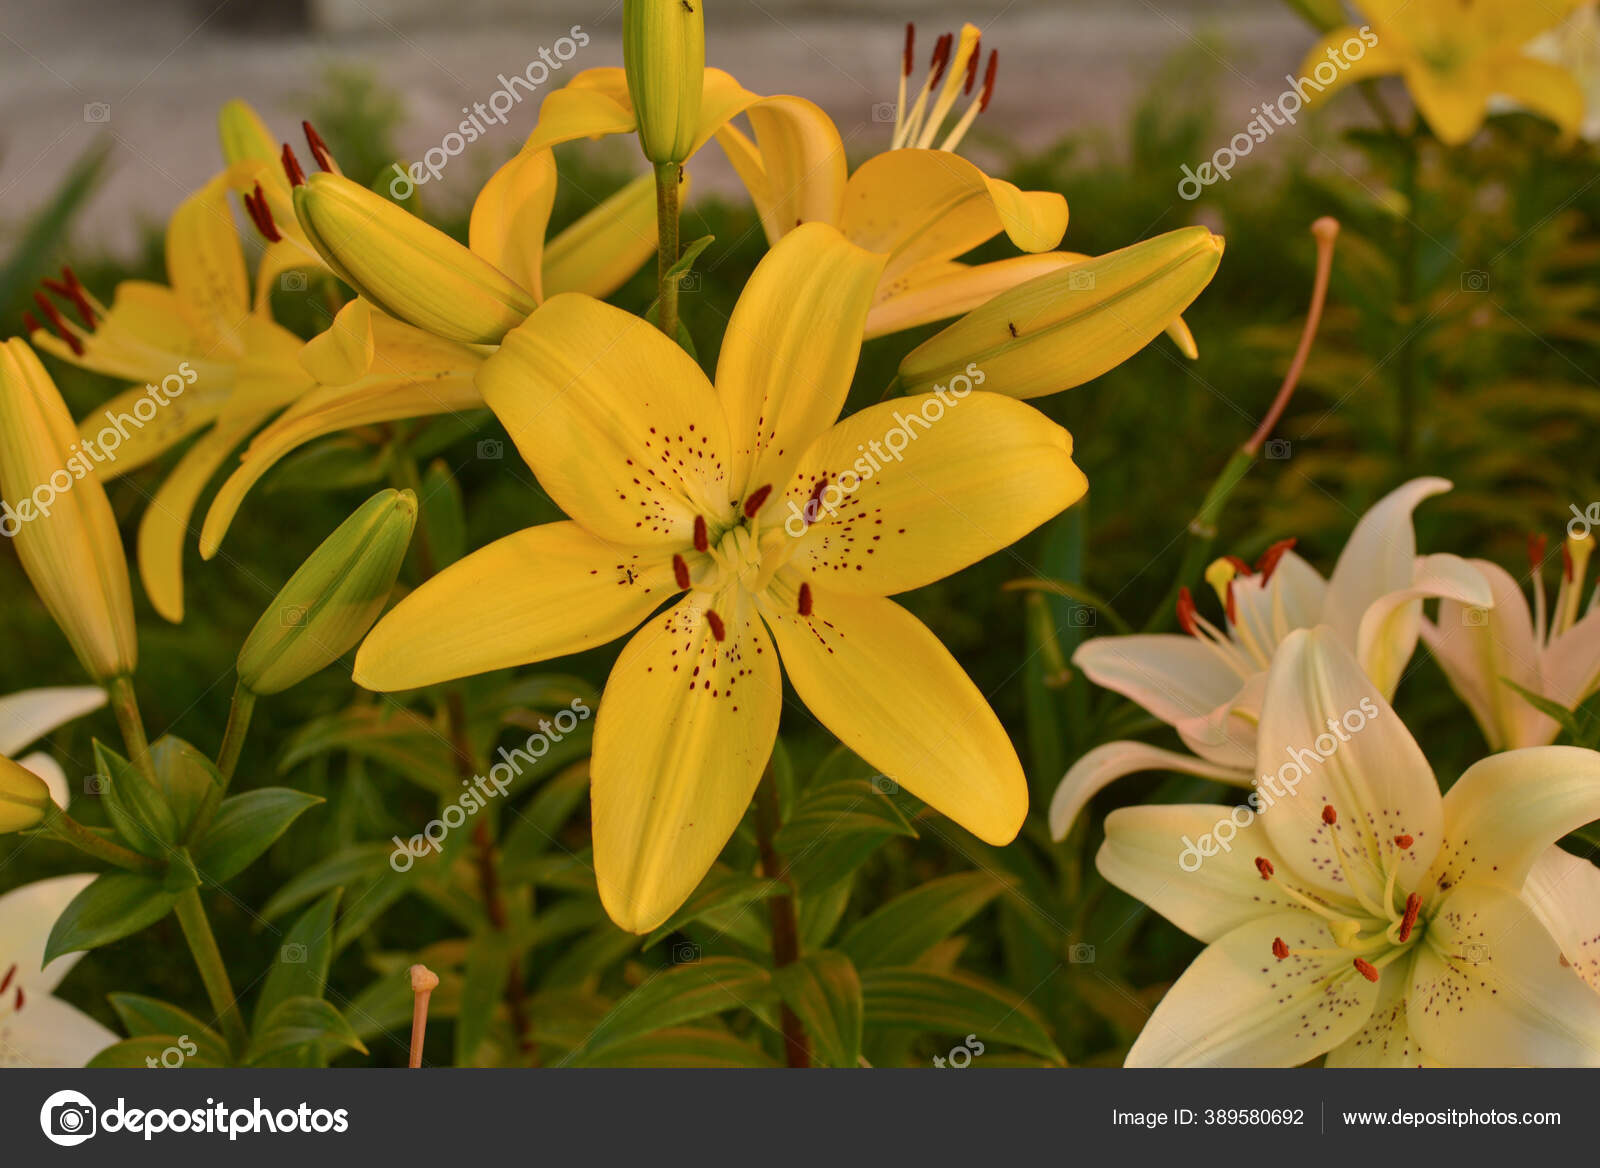 Lily Putih Bawah Sinar Matahari Bunga Bakung Kuning Dan Putih Stok Foto C Kapinosova 389580692